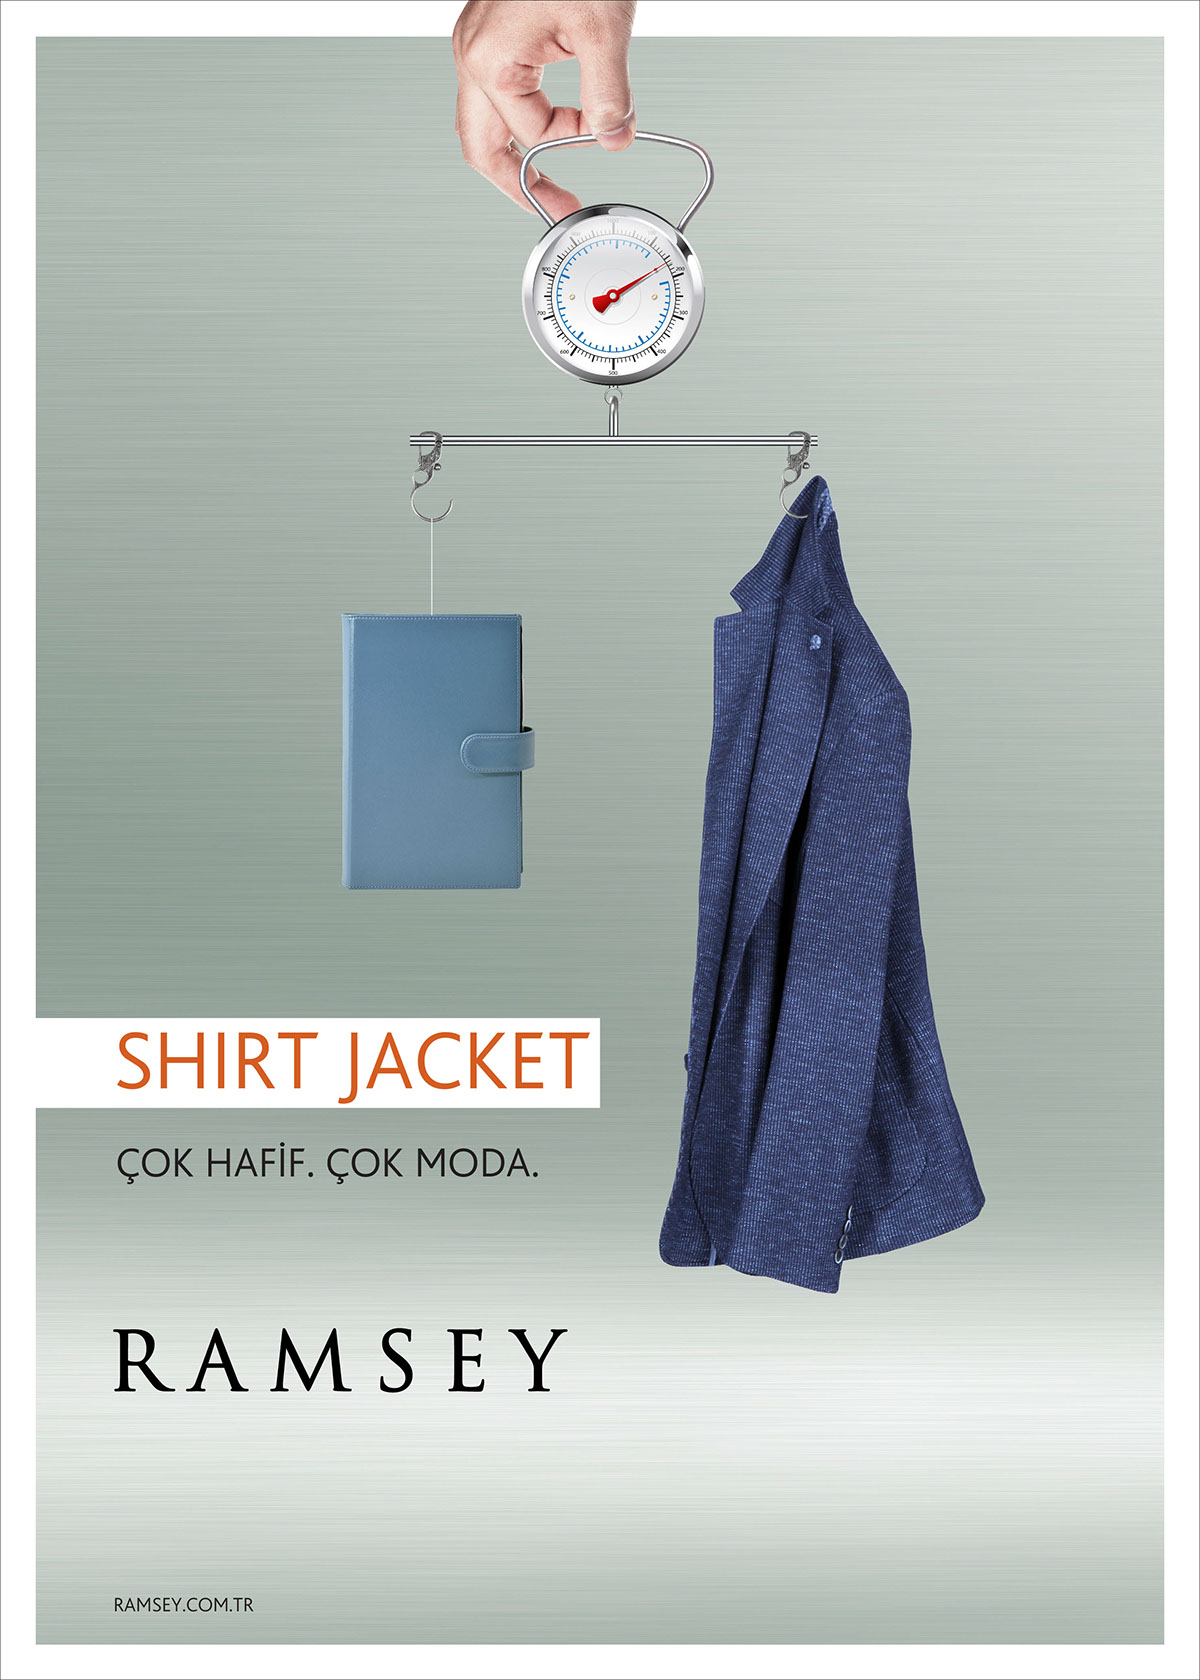 ramsey fashion concept FASHION ADS fashion print shirt jacket fashion ad print suit concept